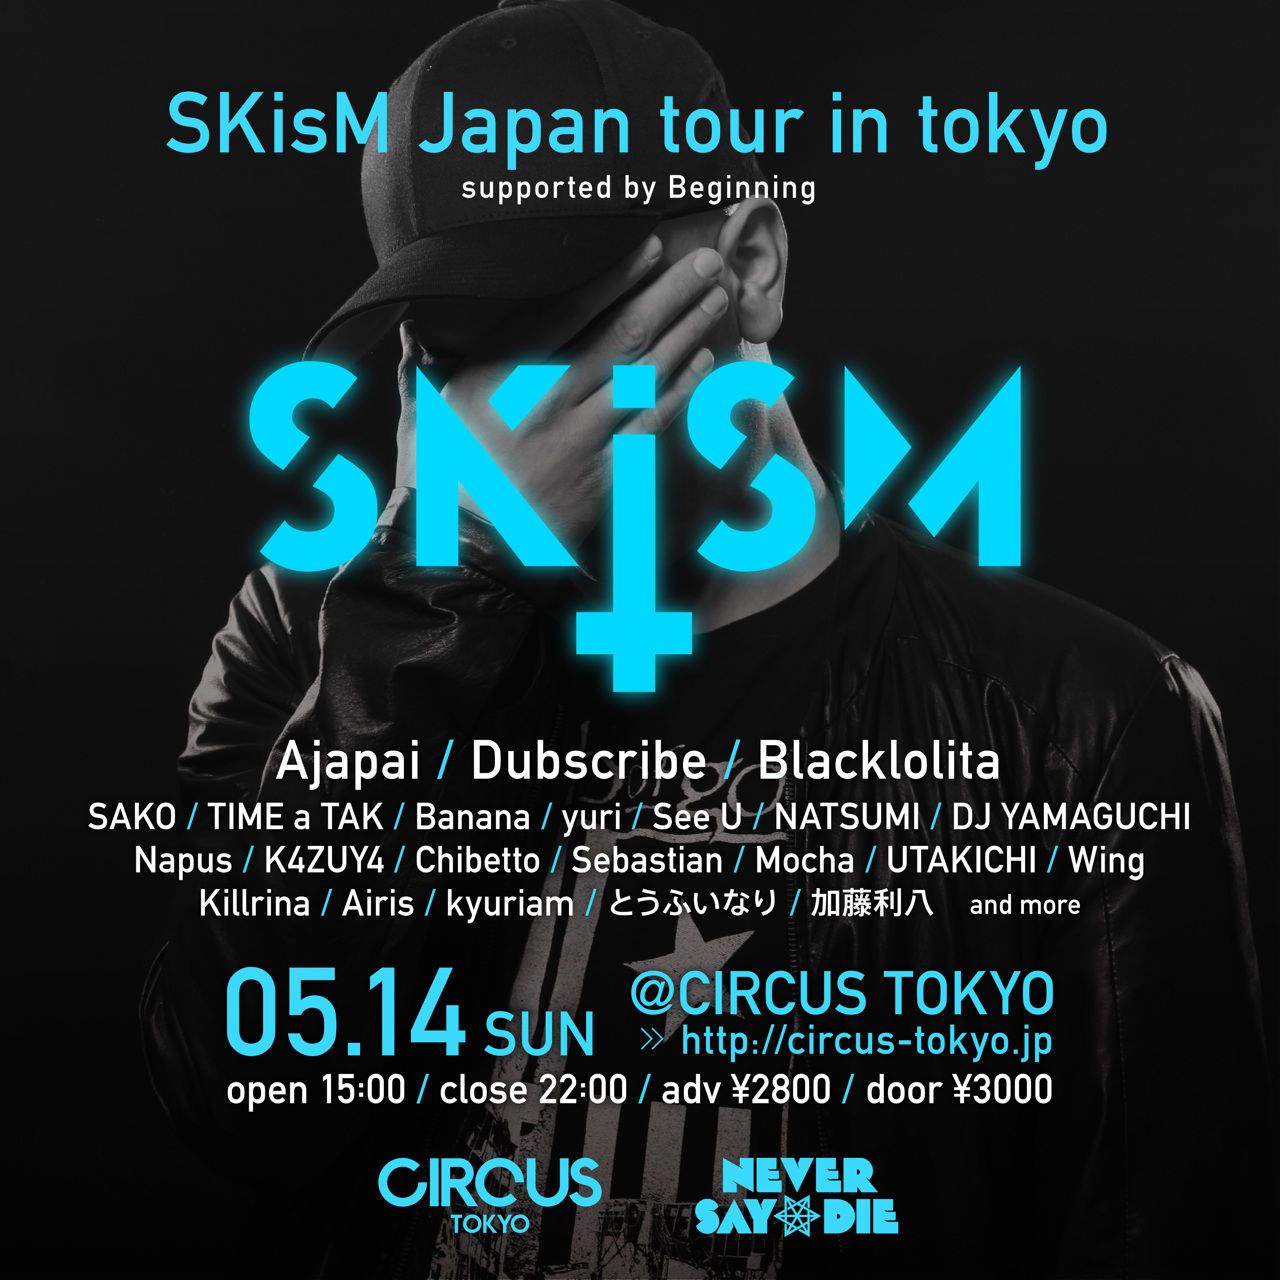 SKisM Japan tour in Tokyo